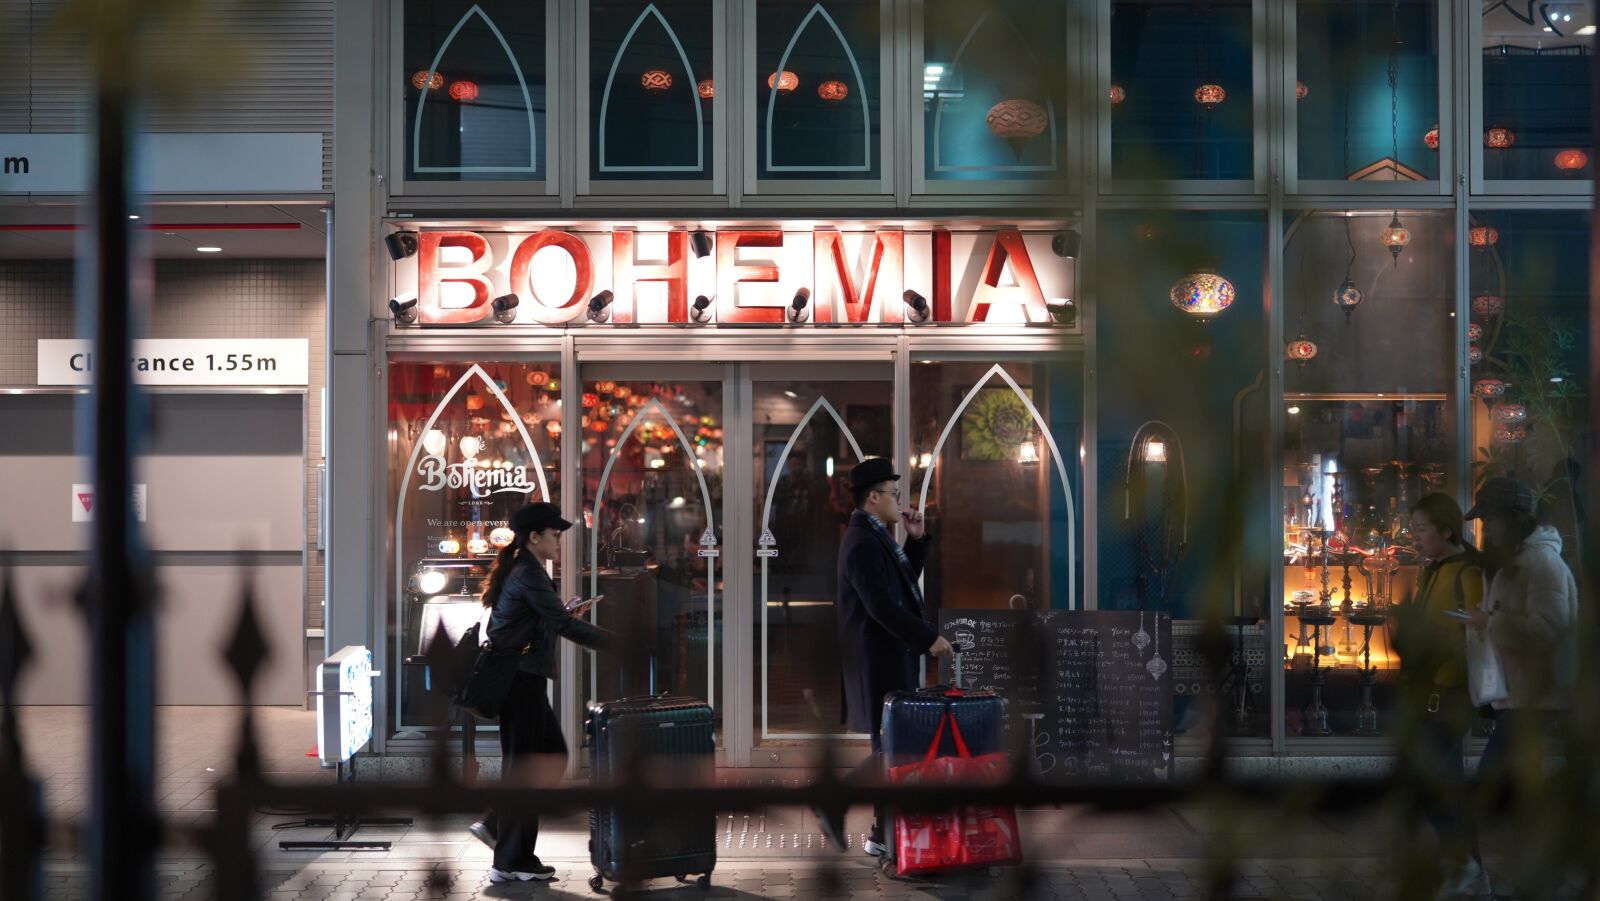 Sony a7 III sample photo. Bohemia, city, night photography